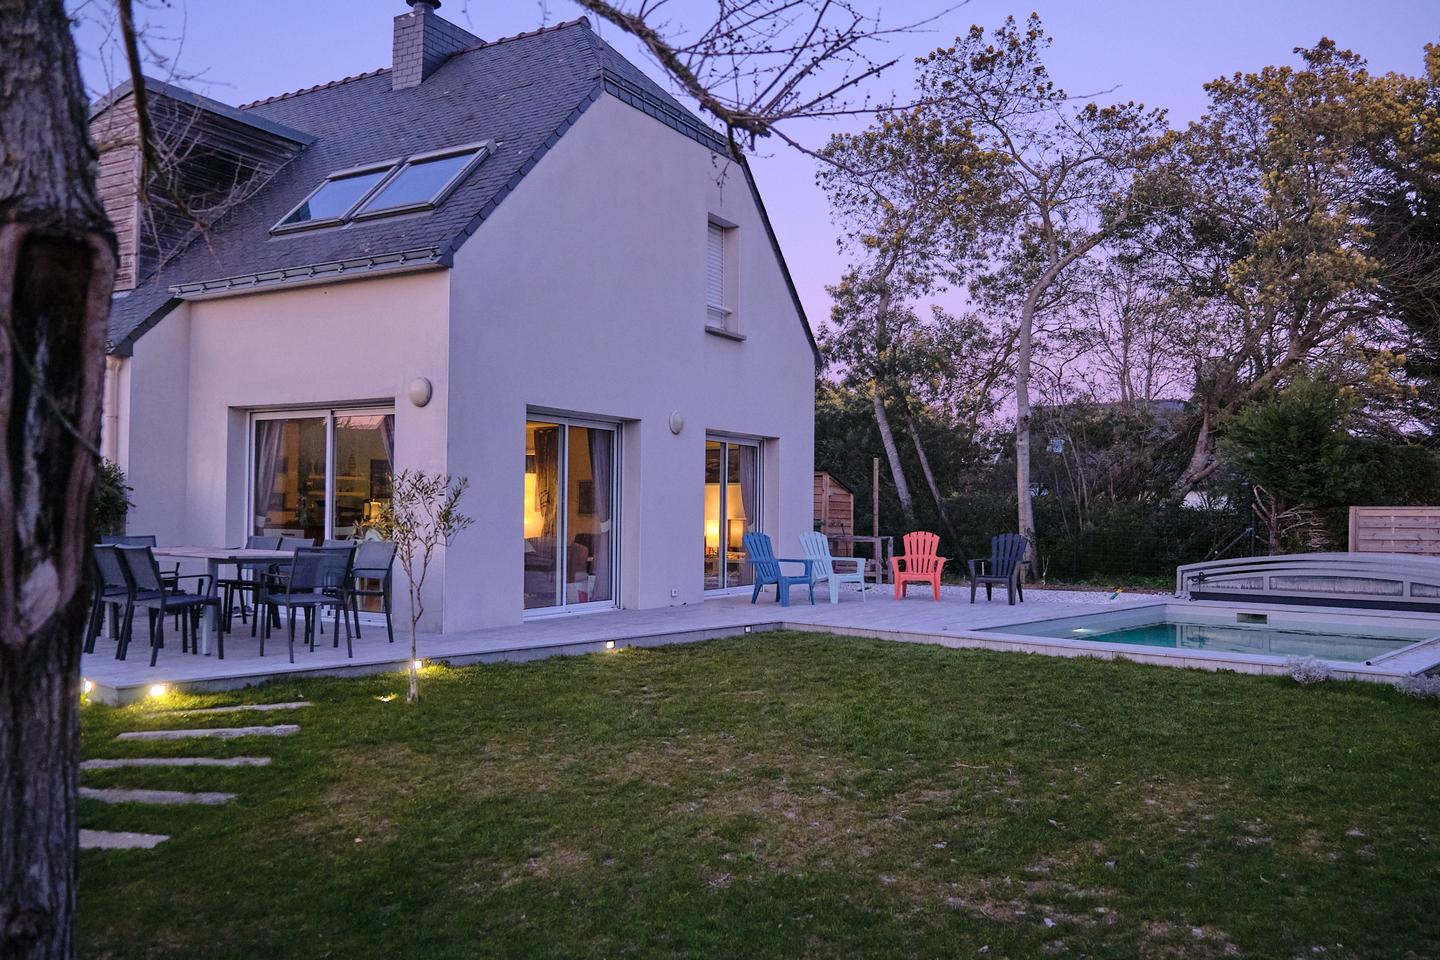 Hôte GreenGo: Grande maison familiale avec piscine pour 10 personnes, 12 max. Note de 4.9 sur une autre plateforme - Image 9